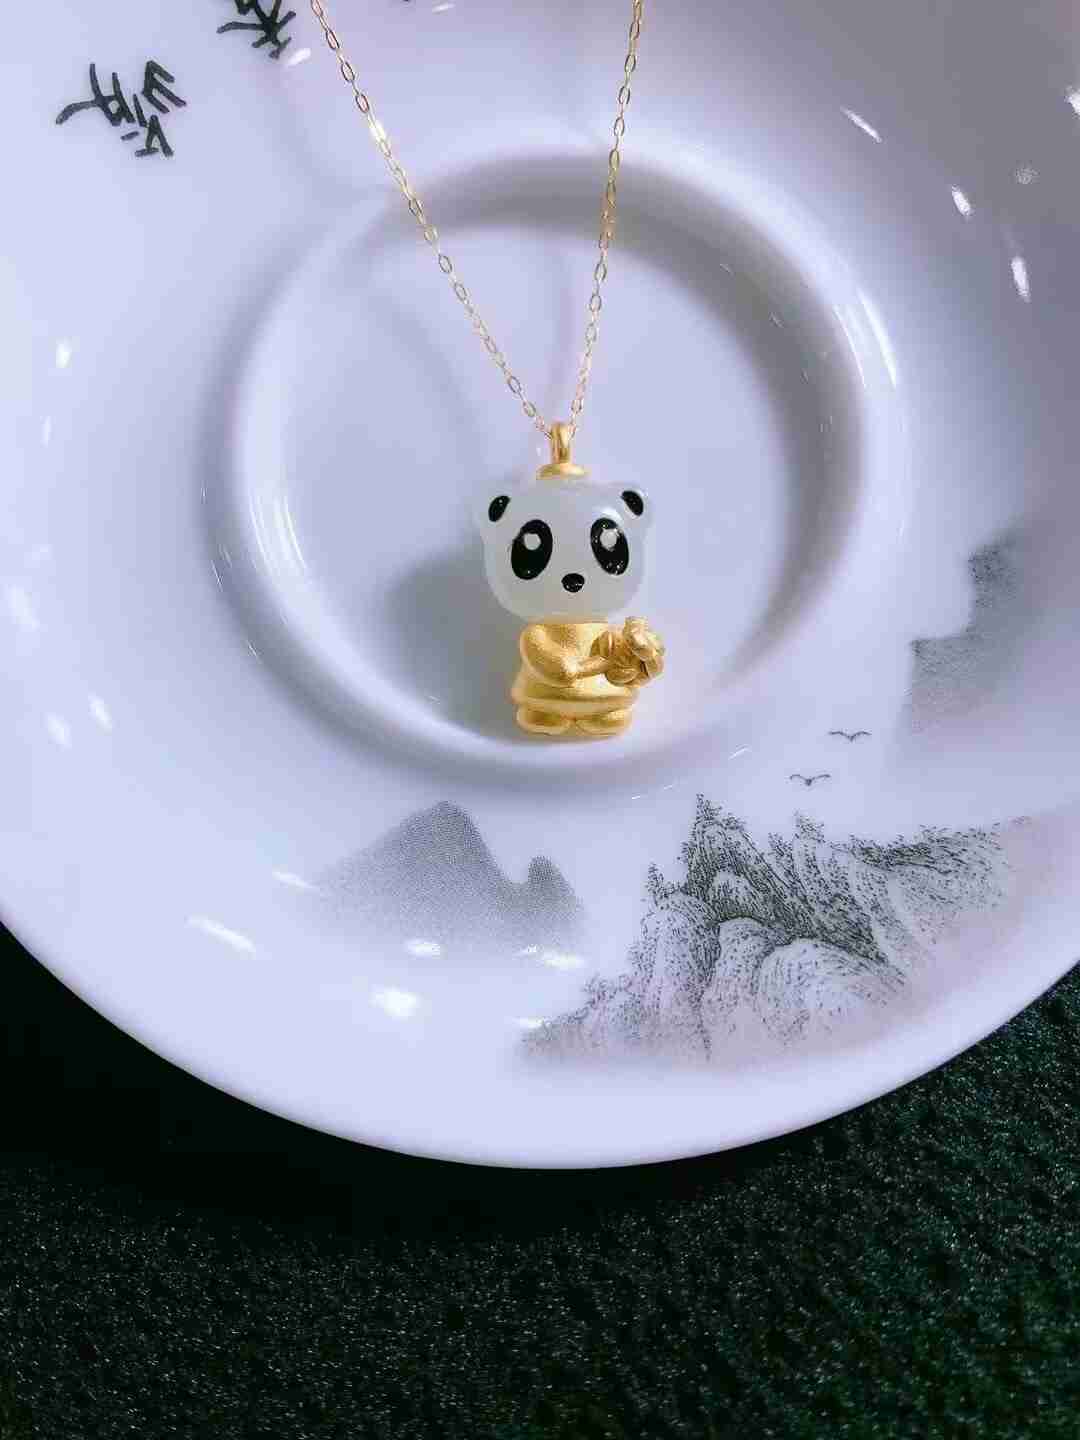 中国黄金古法银s925银镶嵌和田玉小熊猫吊坠